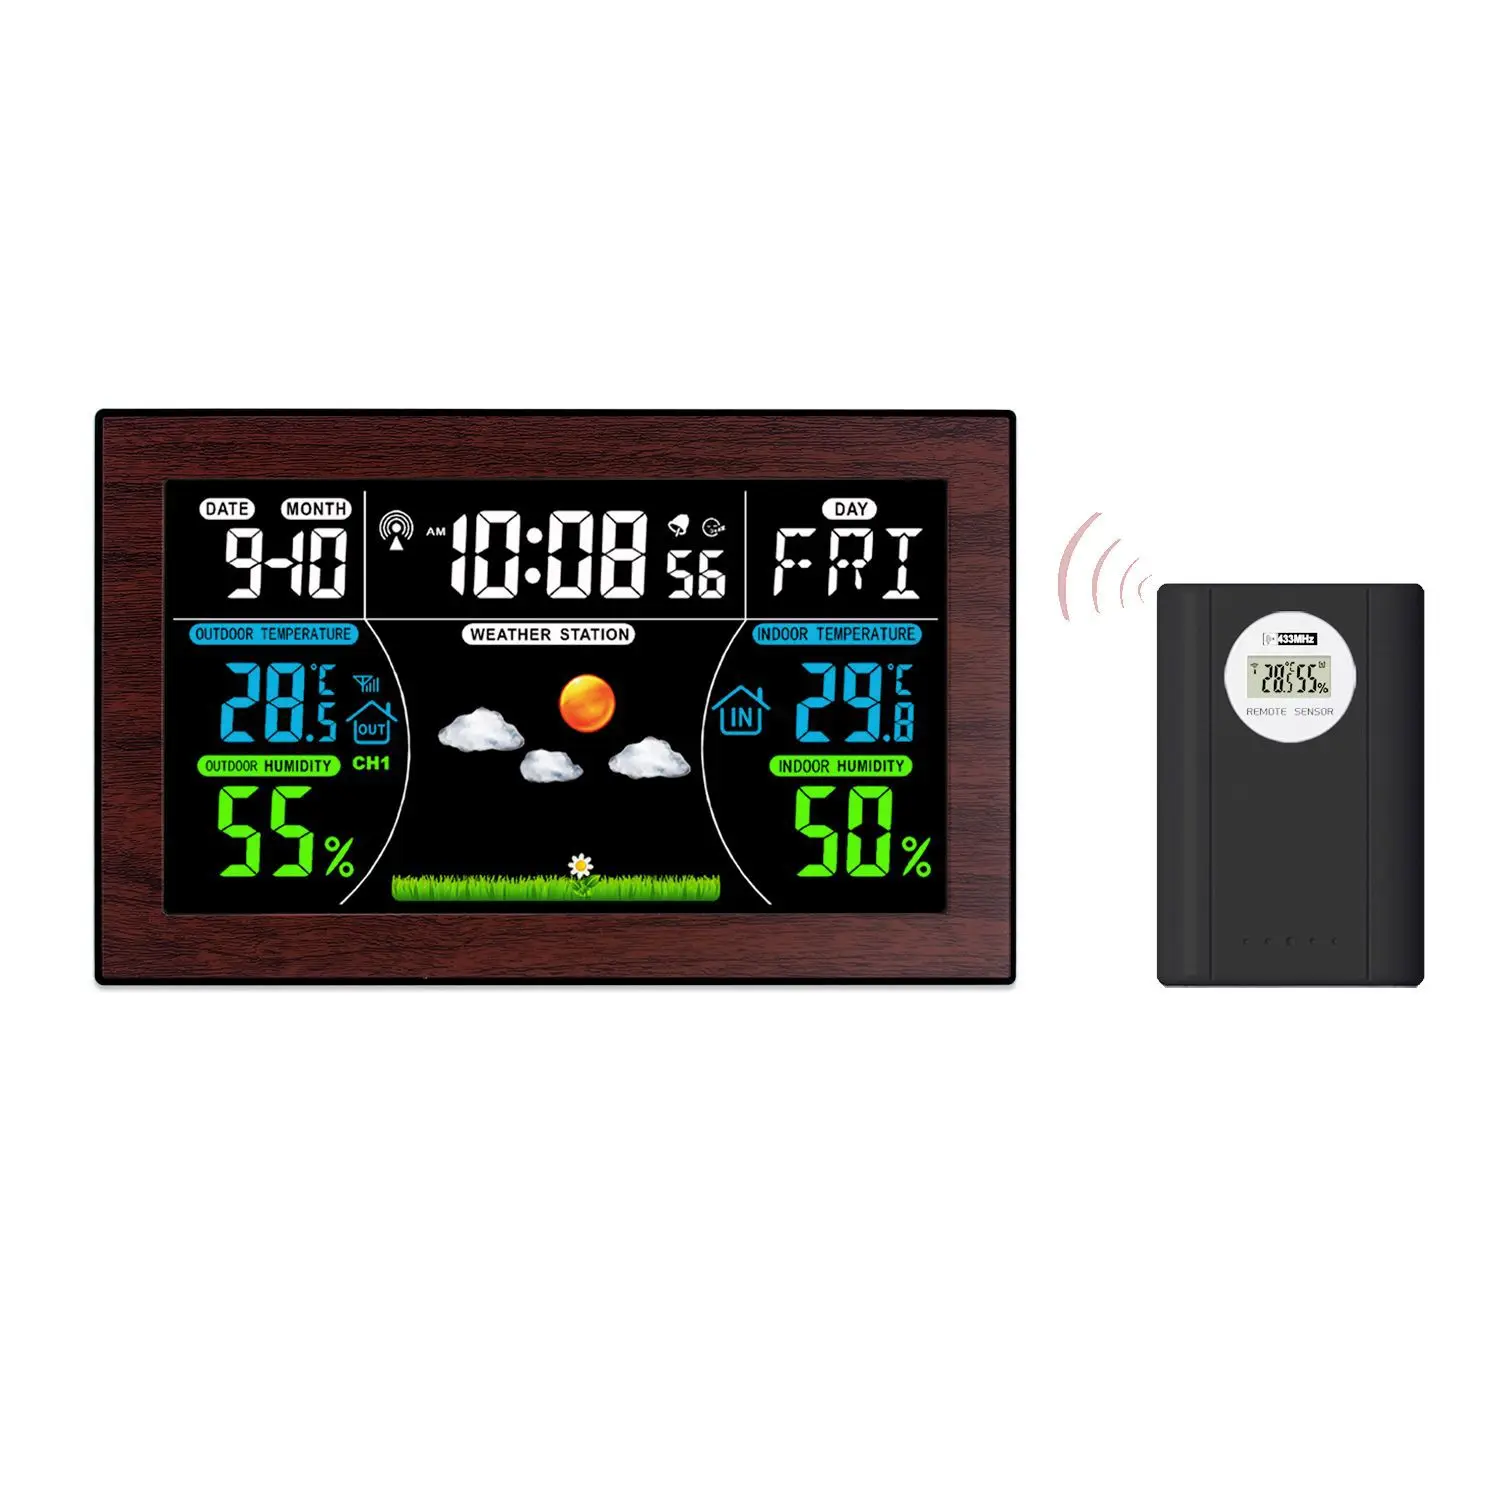 

Цифровая метеостанция, беспроводной термометр для дома и улицы, настольные часы с измерителем температуры и влажности, будильник с повтором сигнала